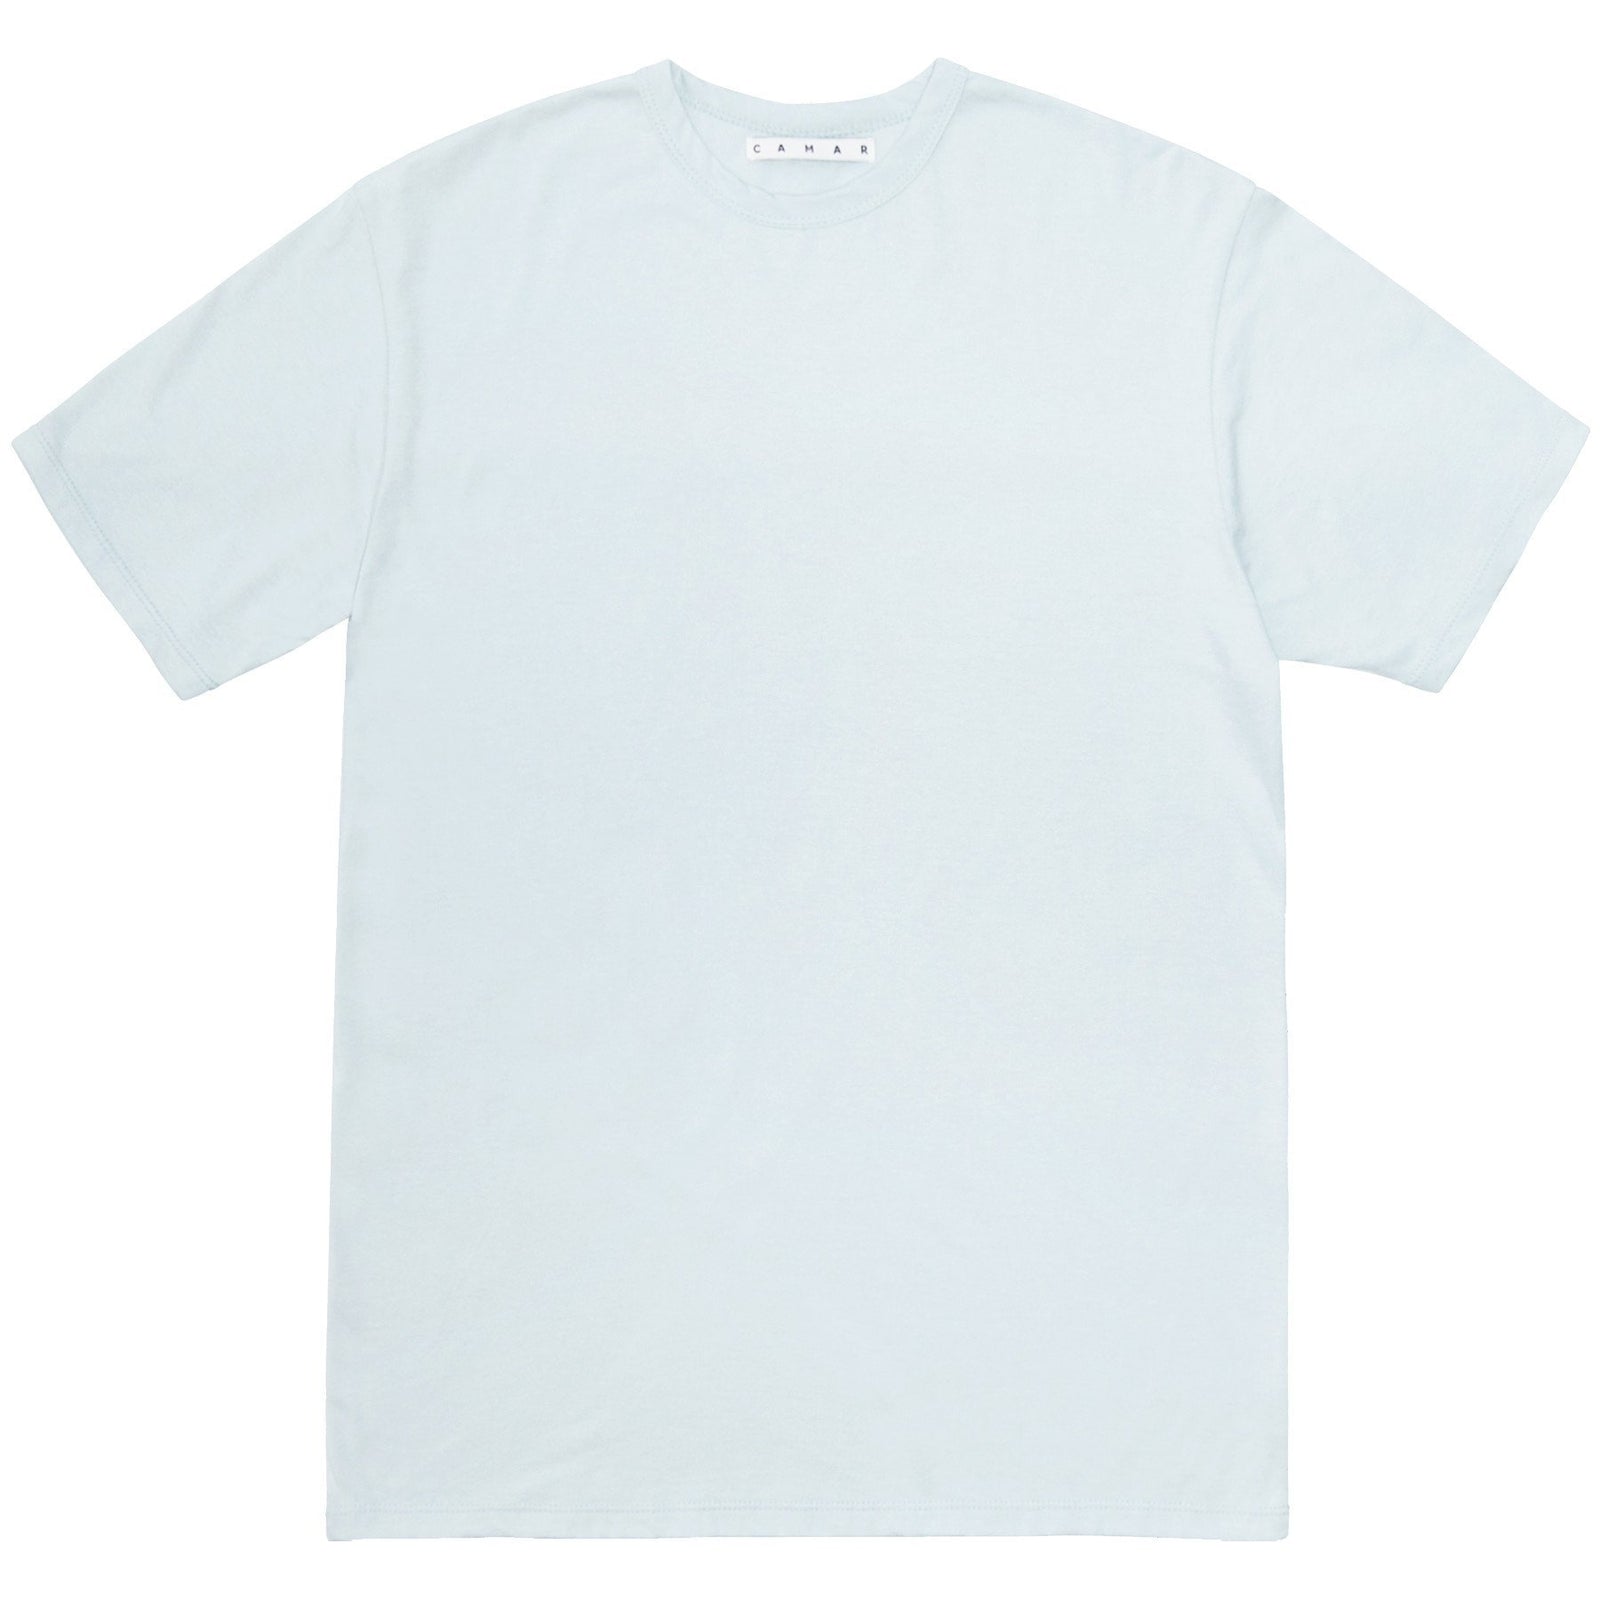 Avon T-Shirt (Pale Blue) - Camar